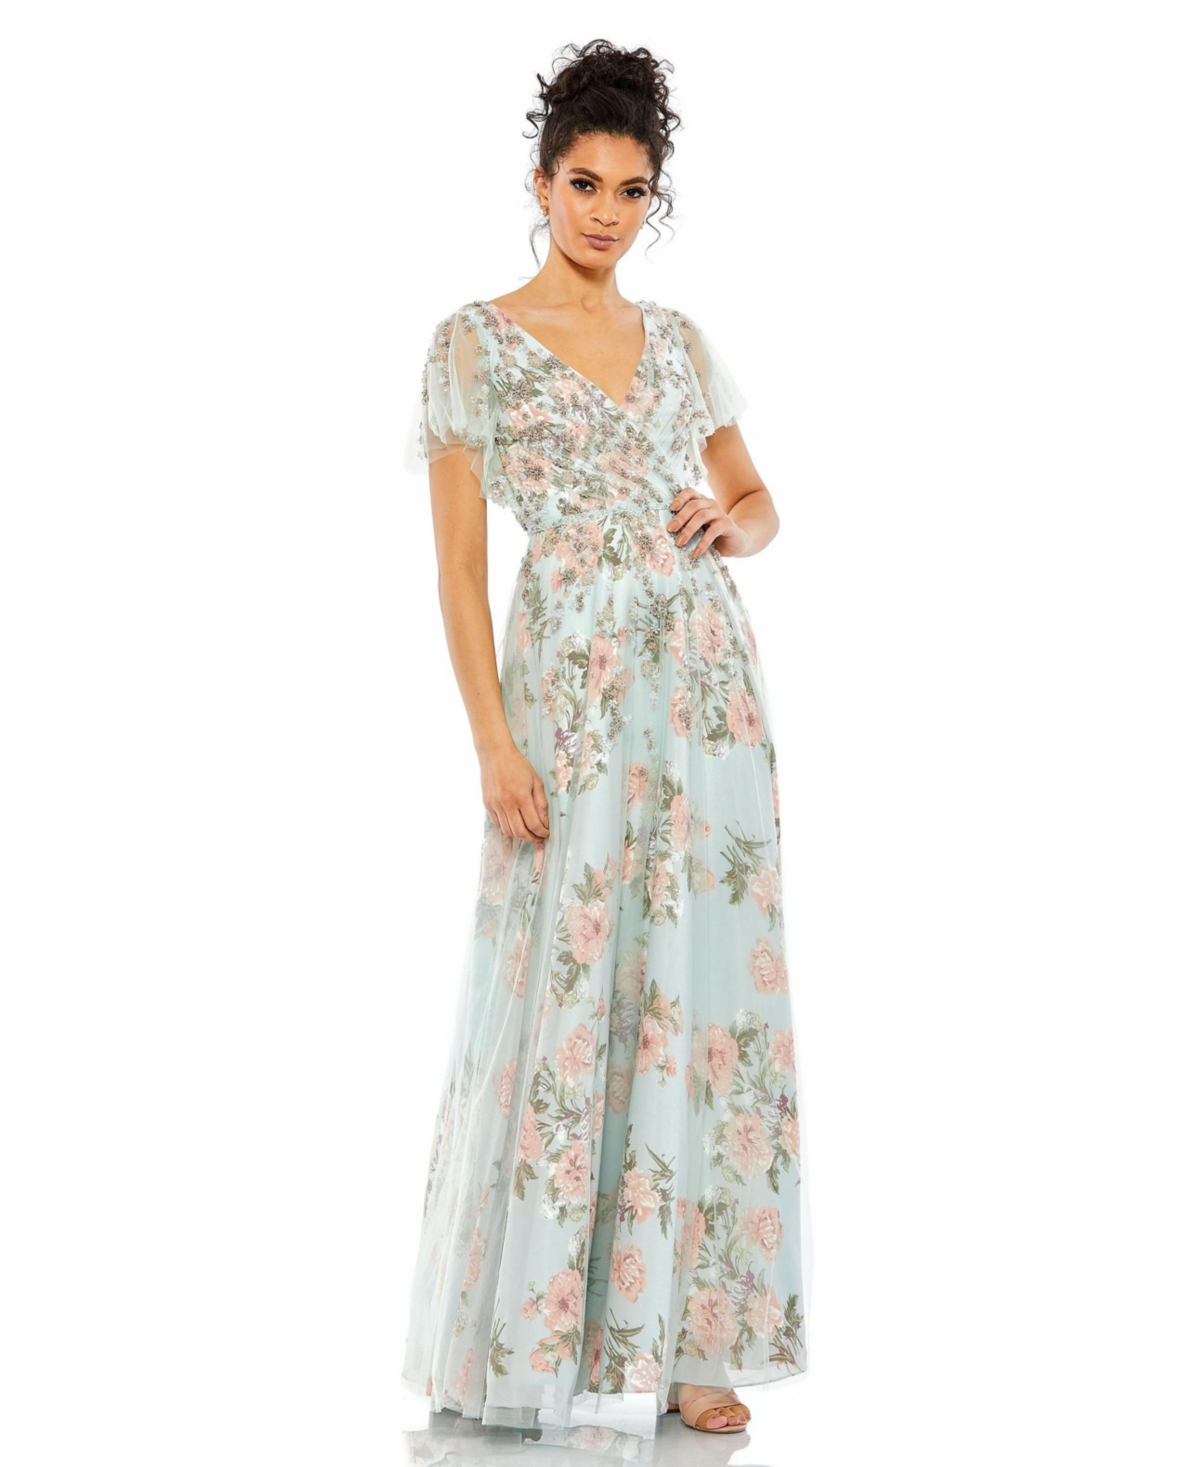 1920s Downton Abbey Dresses Womens Floral Flutter Sleeve V-Neck Maxi Dress - Blue multi $458.00 AT vintagedancer.com